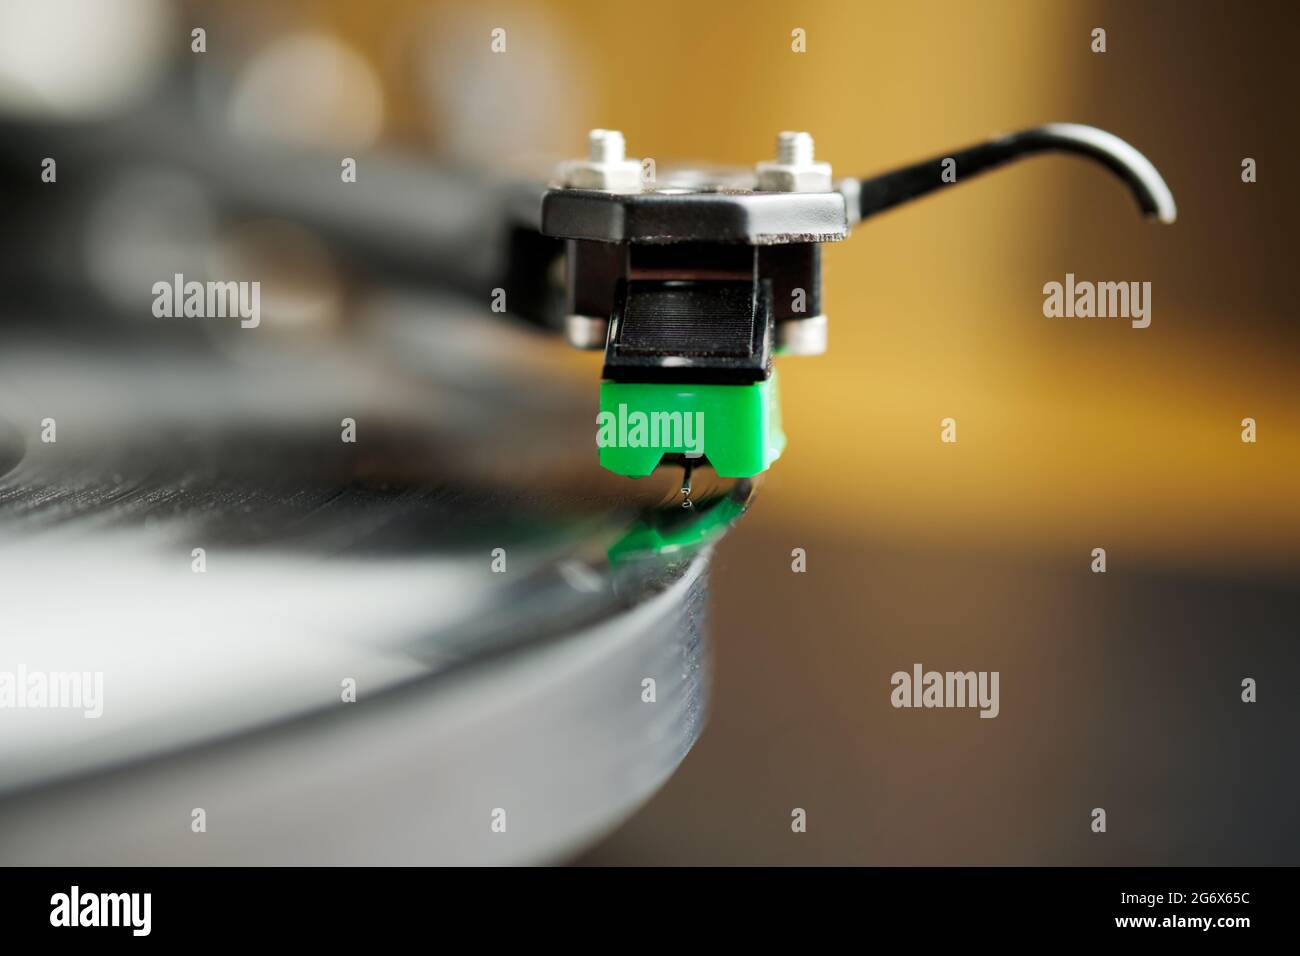 Ein Plattenspieler-Stylus, der in der Nut einer Platte oder eines Albums auf einer Plattenspieler-Platte sitzt. Stockfoto